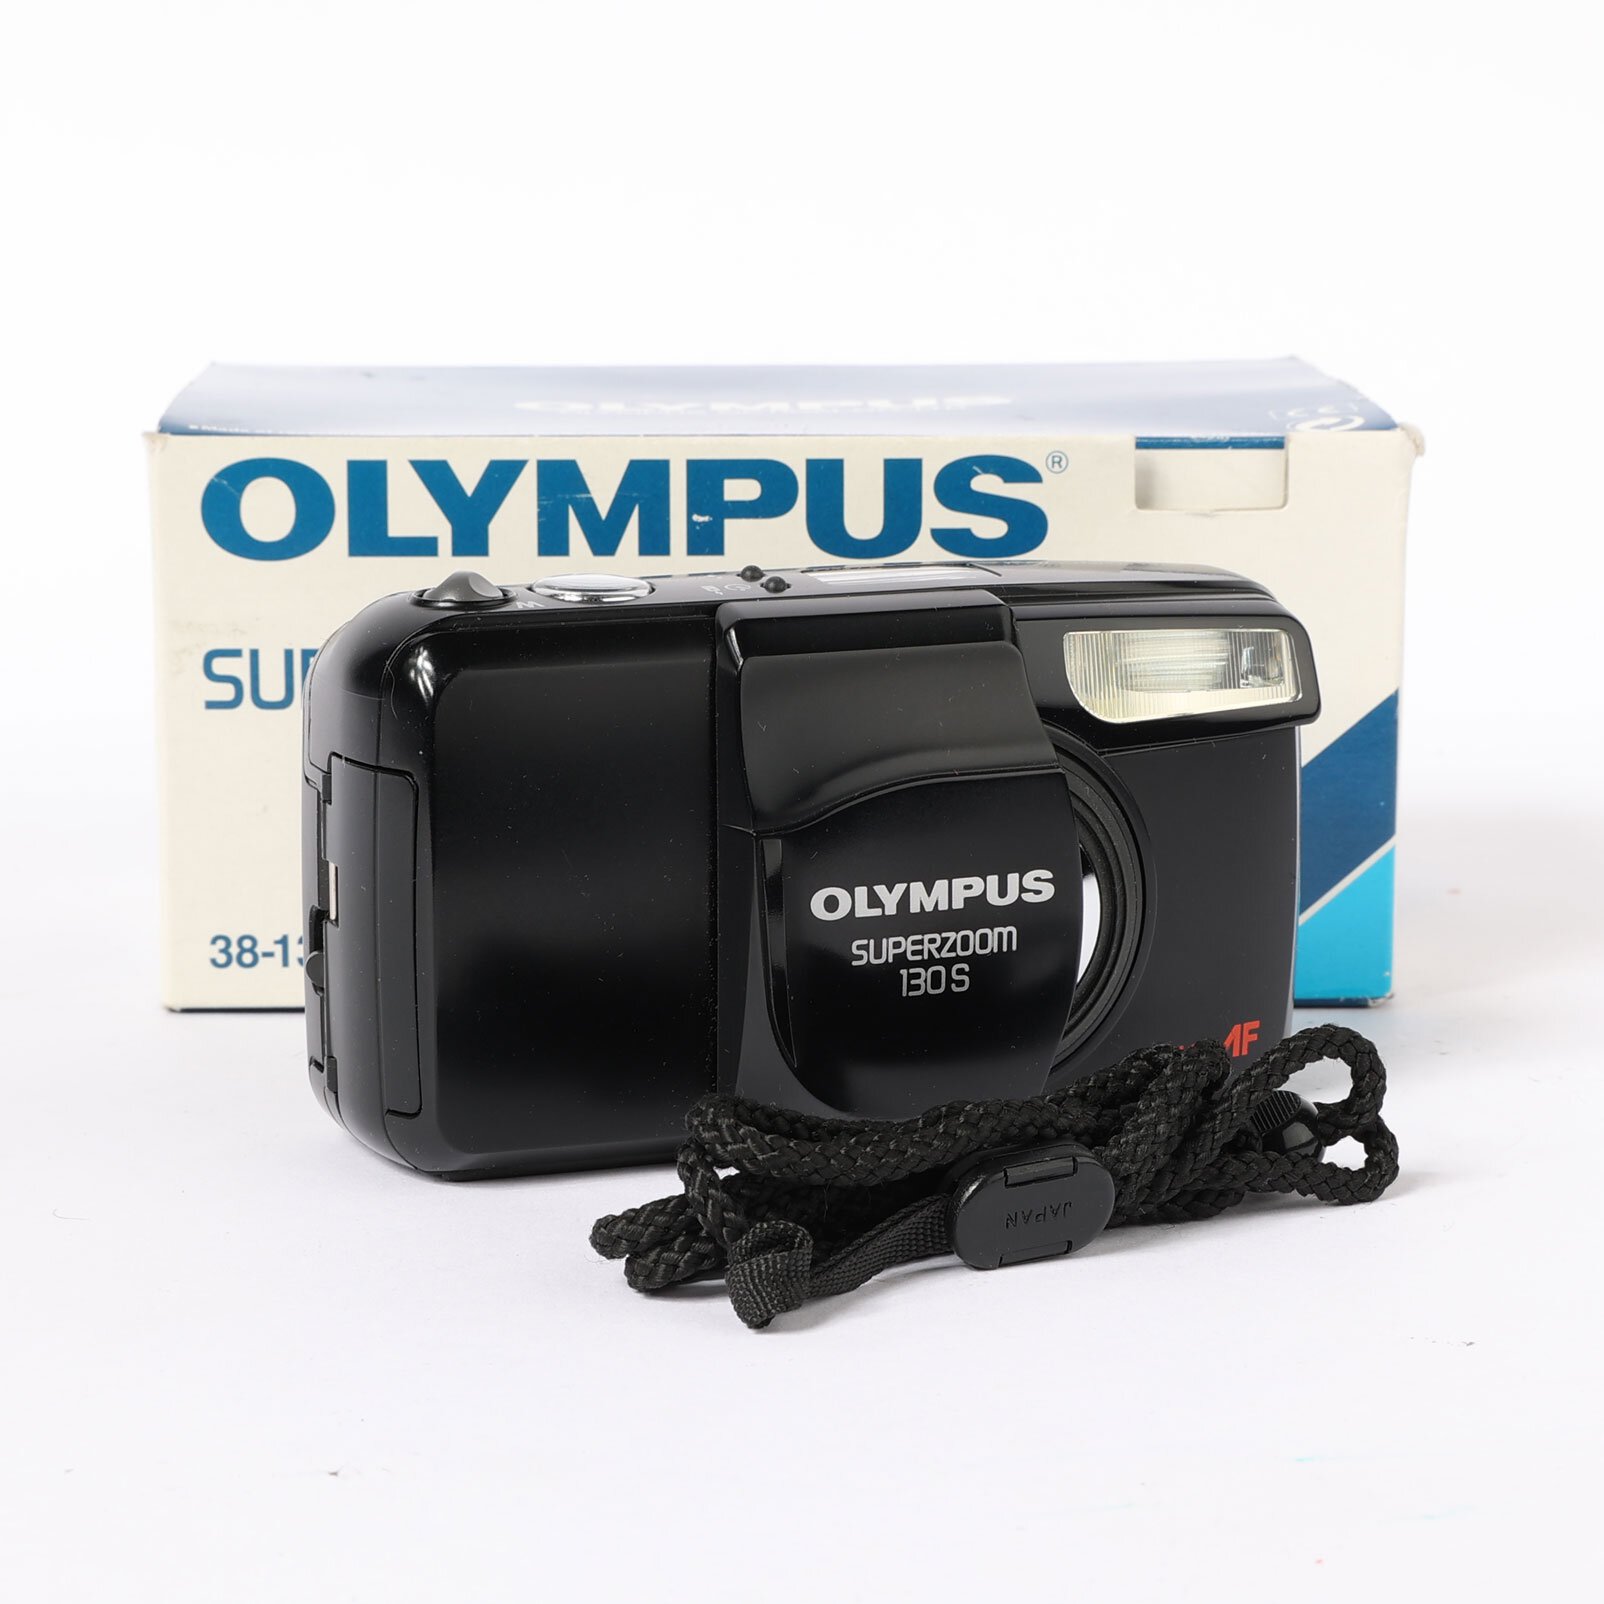 Olympus Superzoom 130 S